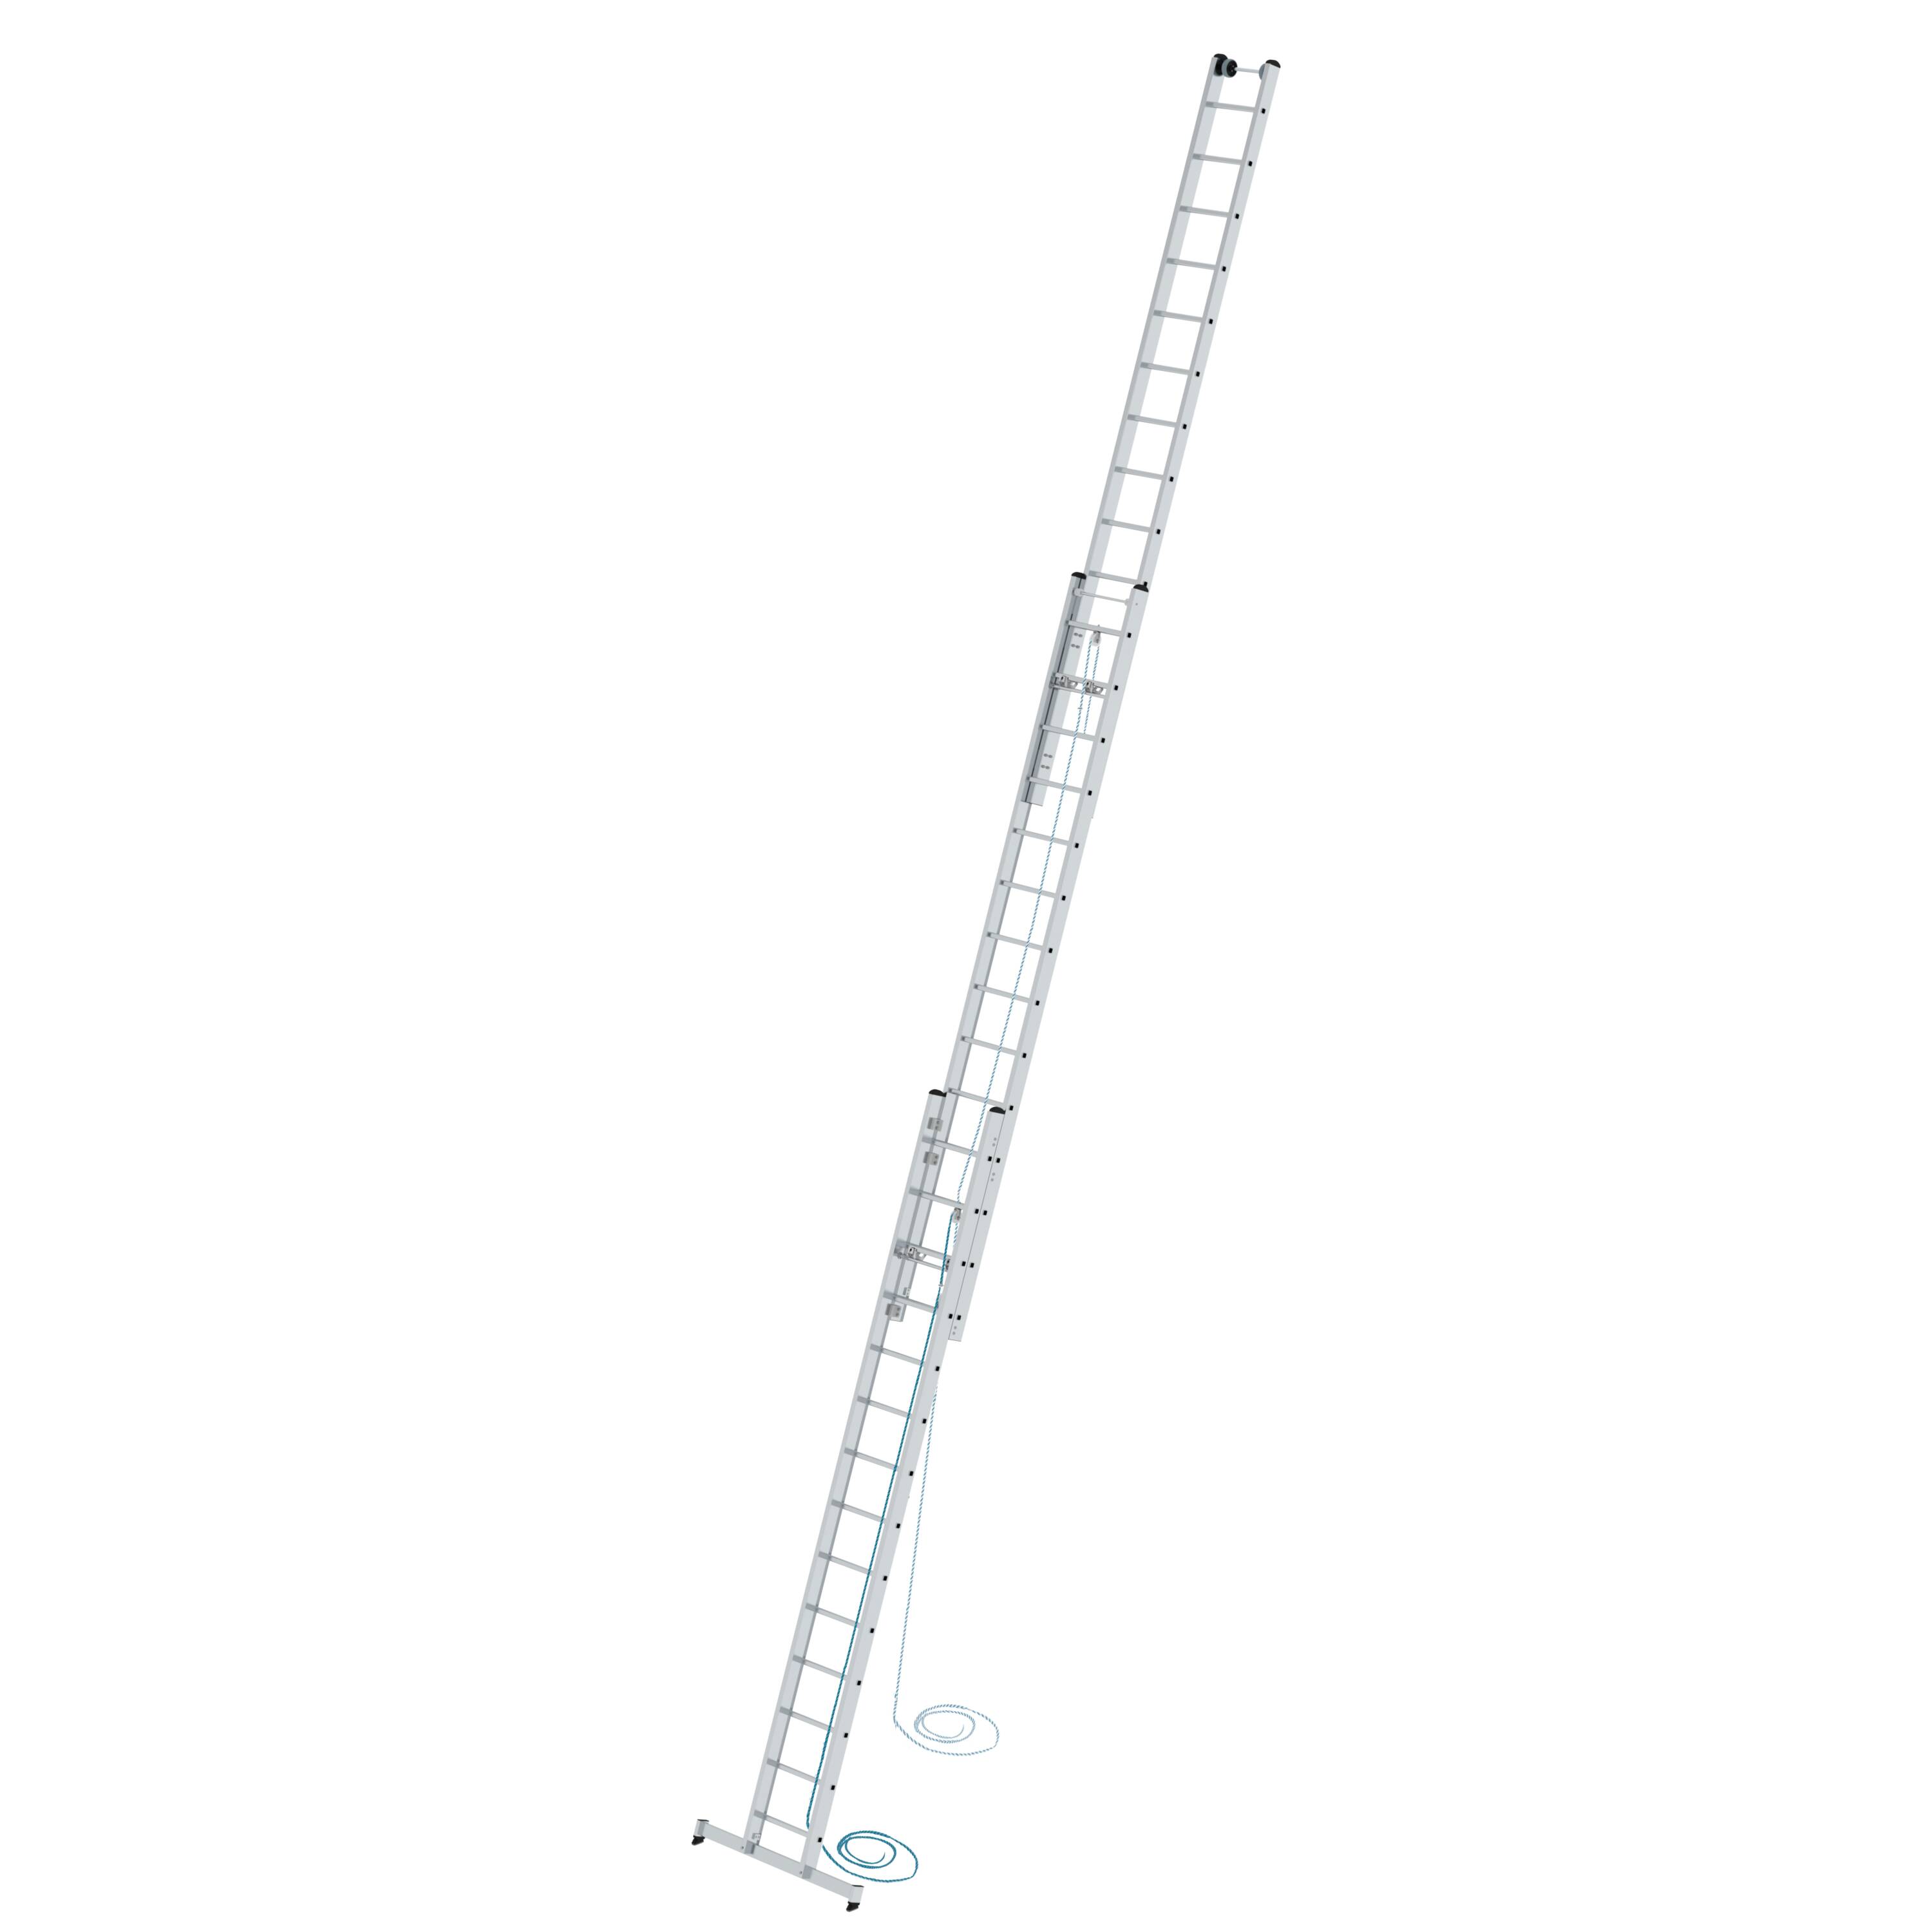 Sprossen-Seilzugleiter 3-teilig mit nivello®-Traverse 3x14 Sprossen